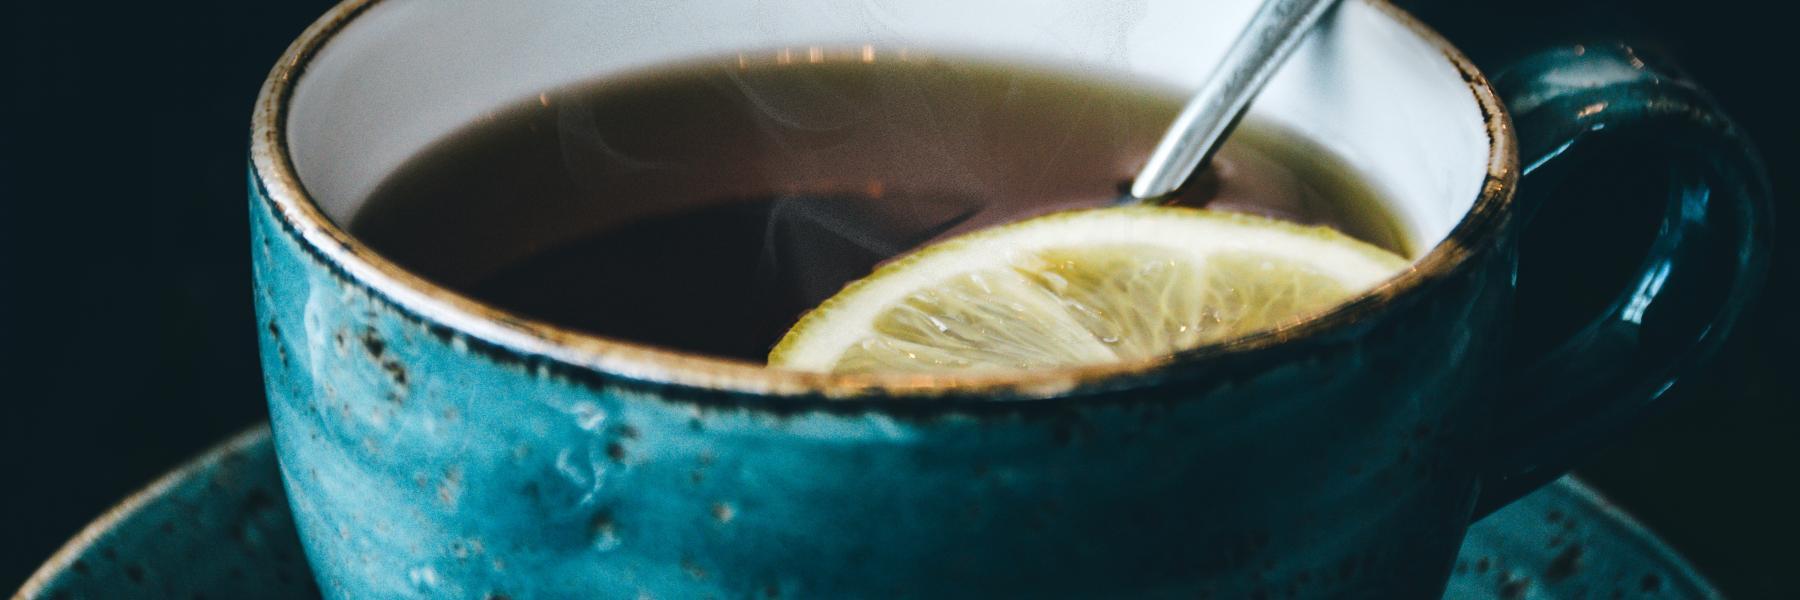  6 من فوائد الشاي الأخضر مع الليمون..من بينها إنقاص الوزن